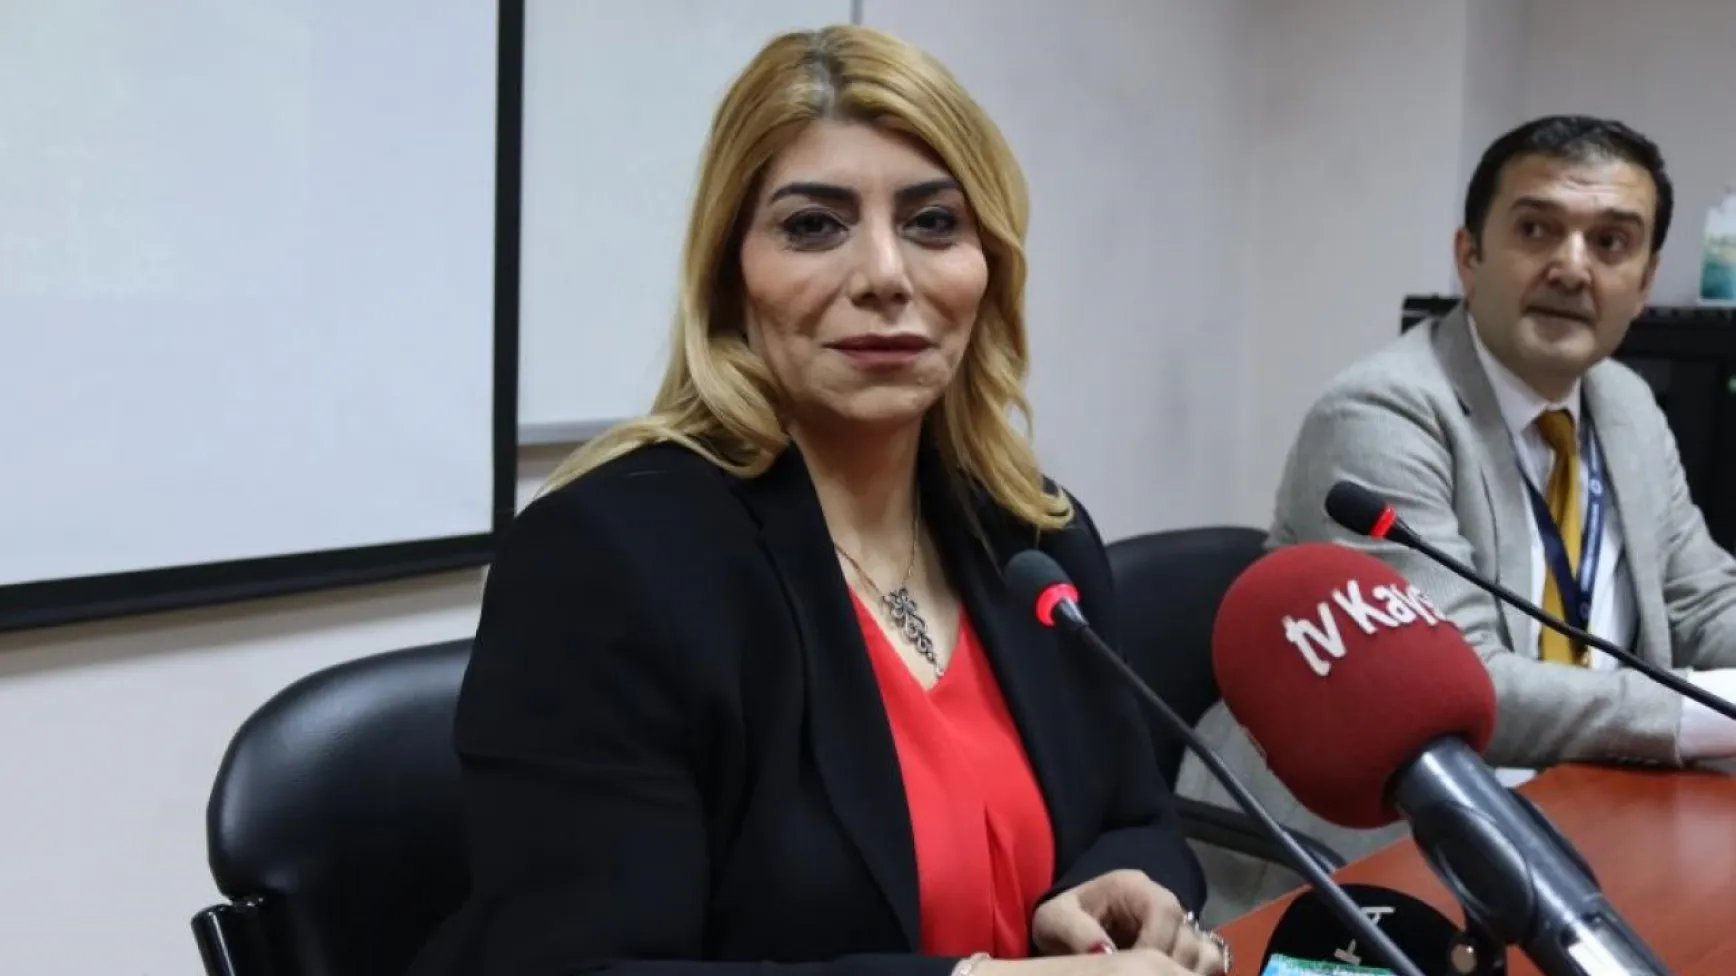 Süper Lig'in ilk kadın başkanına 'maymun dönmesi' diye hakaret eden sanığa hapis cezası